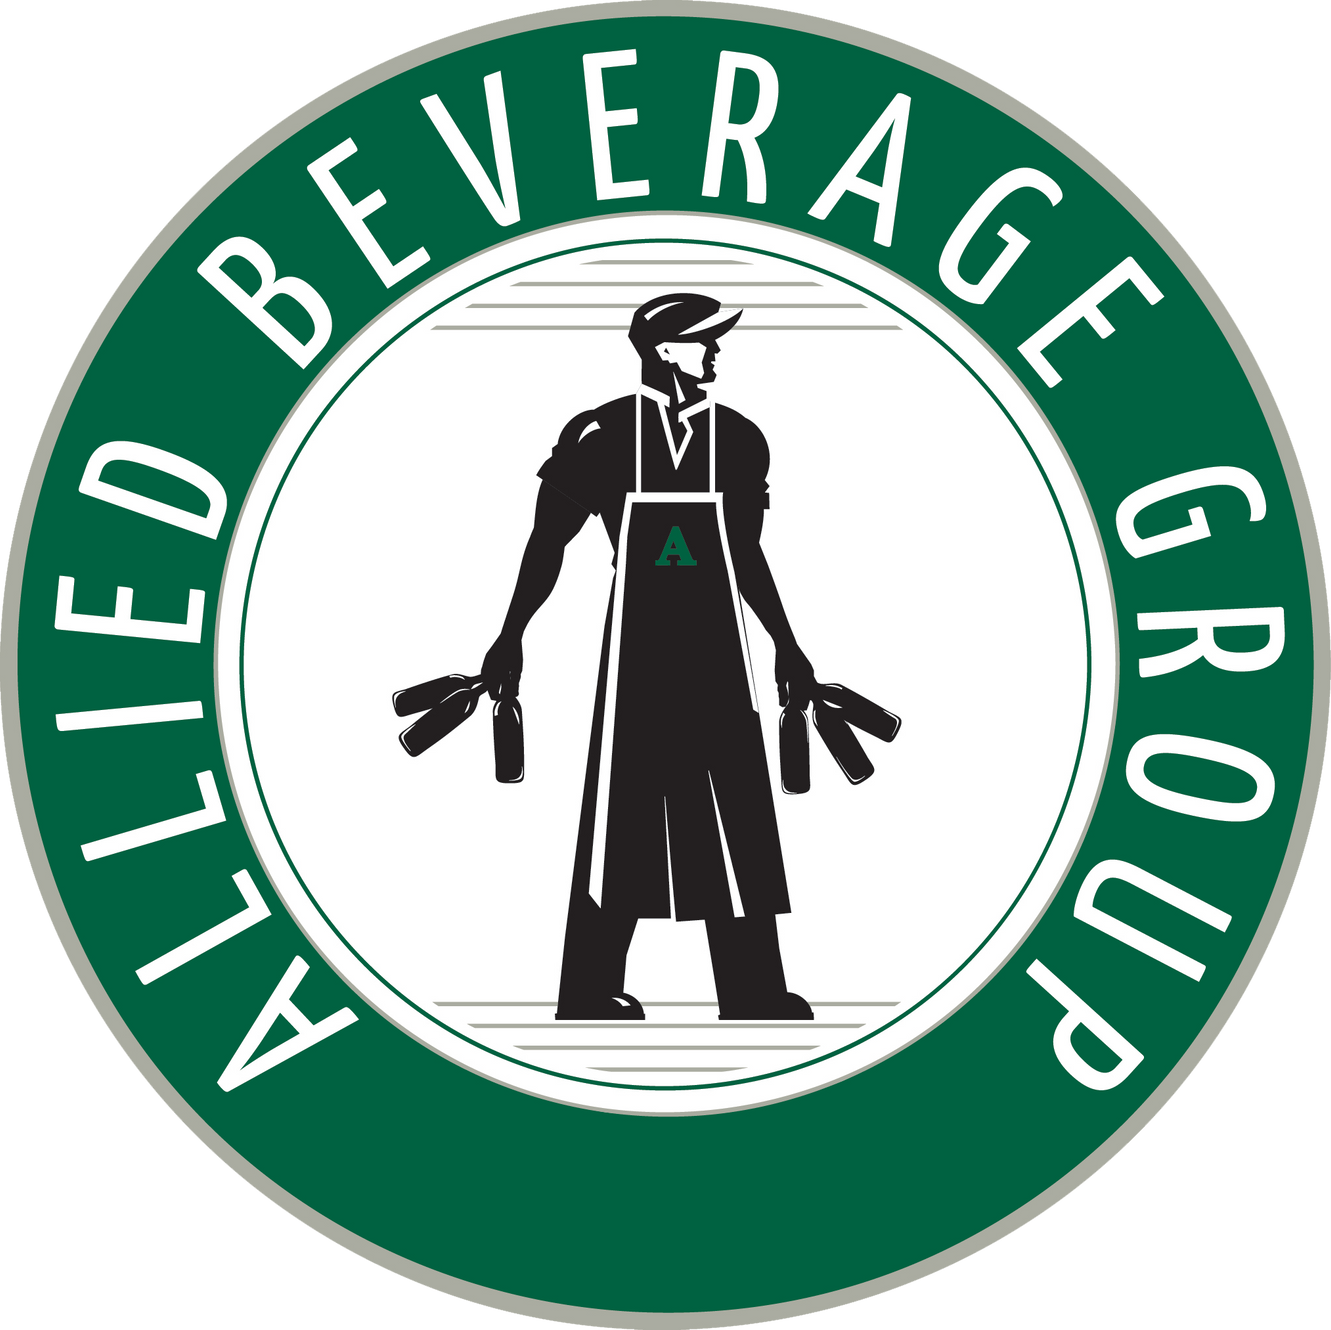 Allied Beverage